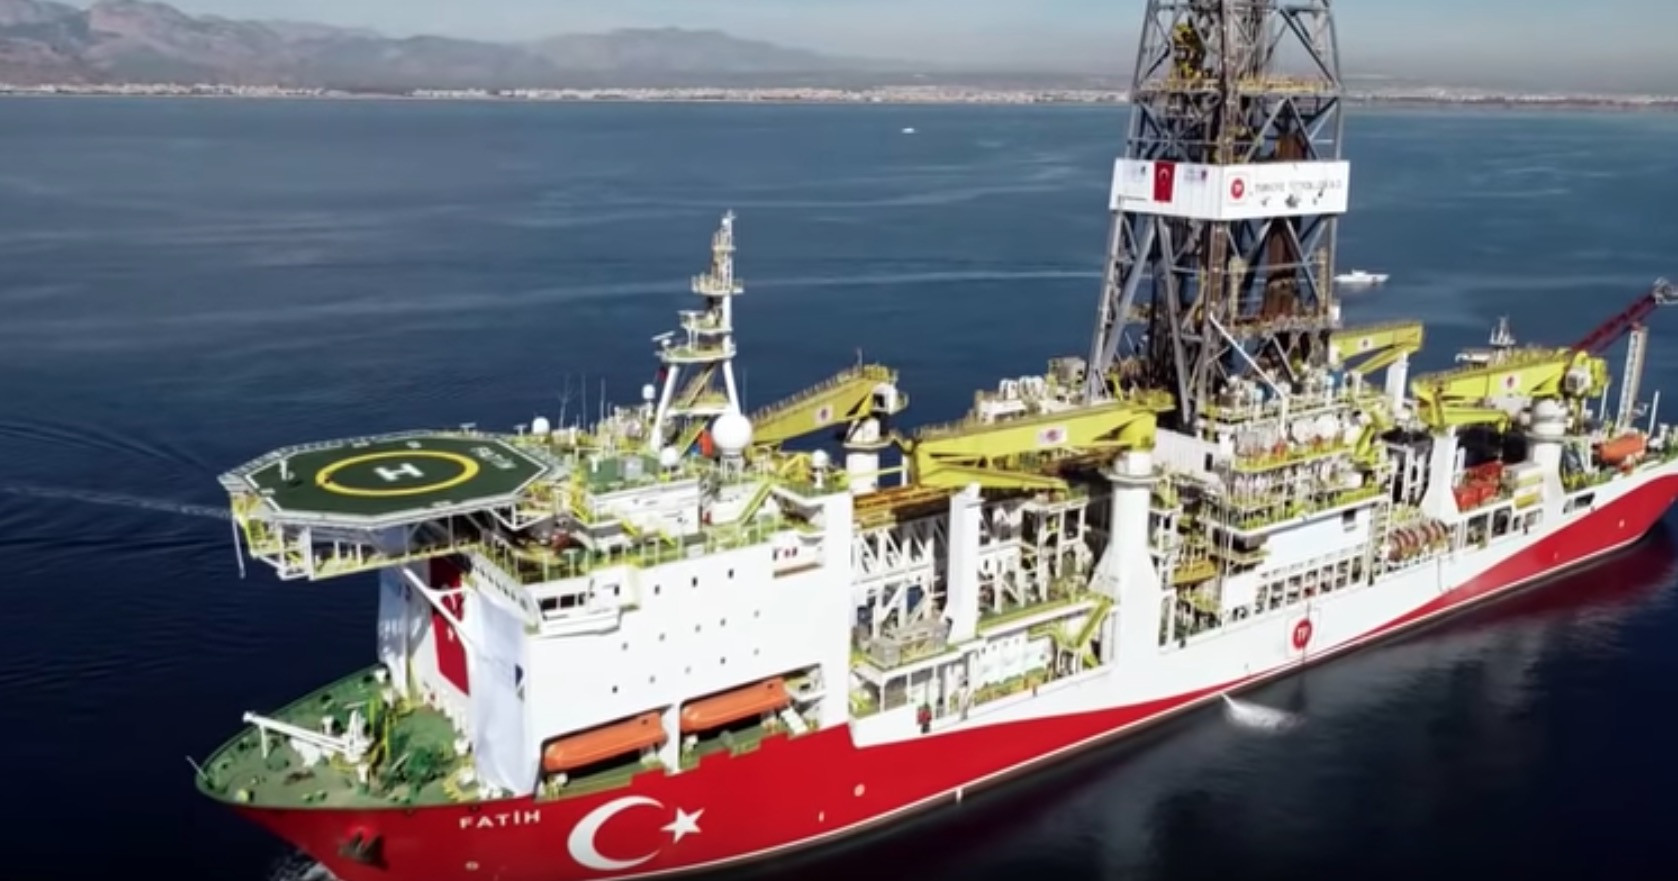 Δύο πλοία στέλνει η Τουρκία για γεωτρήσεις στην κυπριακή ΑΟΖ